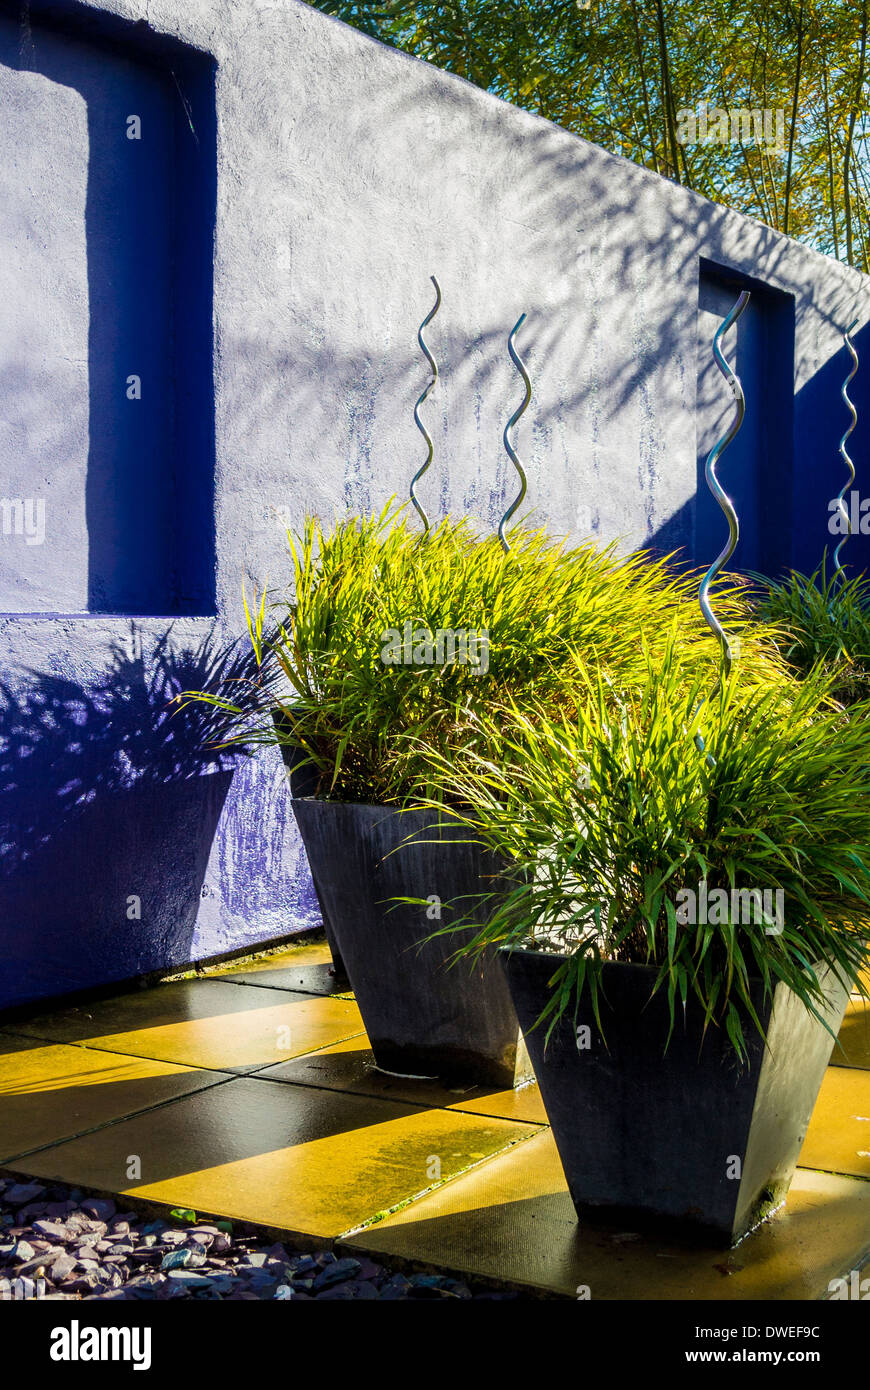 Gräser in Kübeln auf der Terrasse der moderne Garten gepflanzt Stockfoto